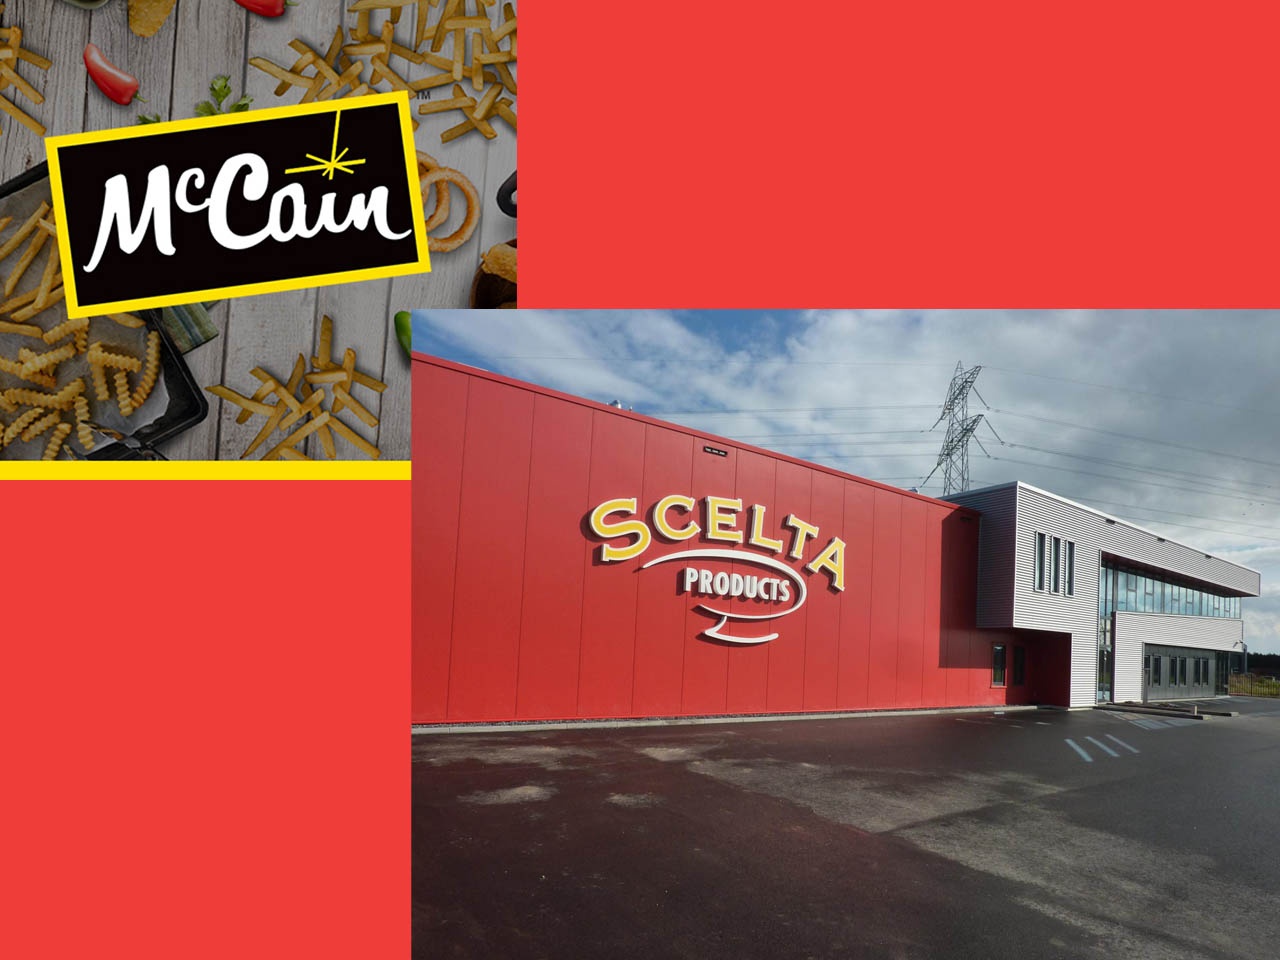 Acquisition de l’entreprise néerlandaise Scelta Products par McCain Foods